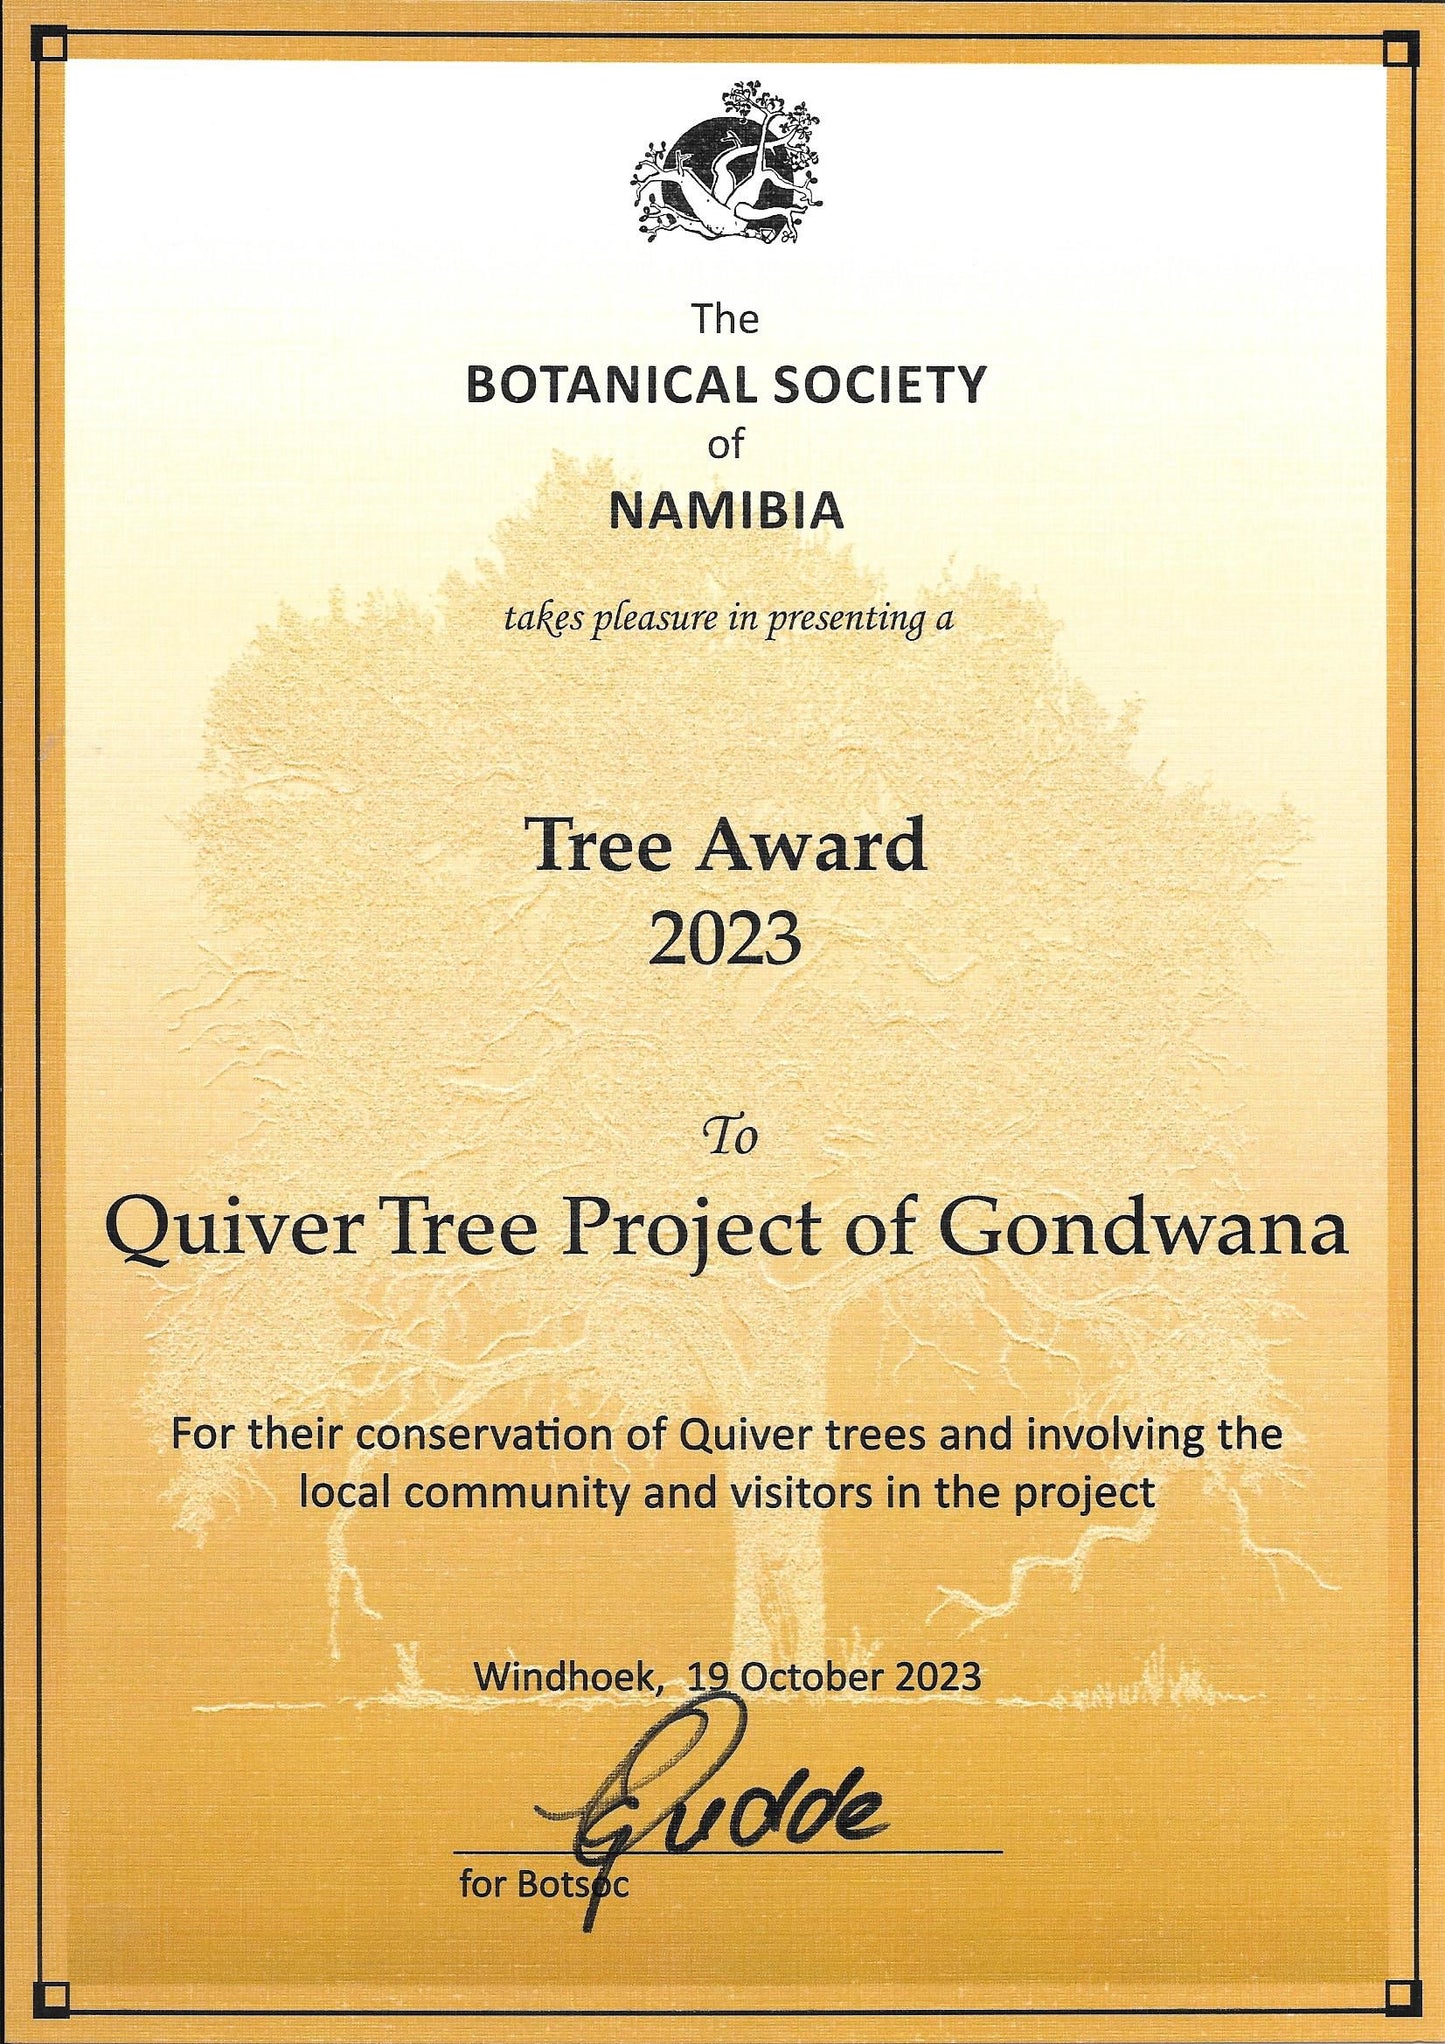 Adopt a Quiver Tree